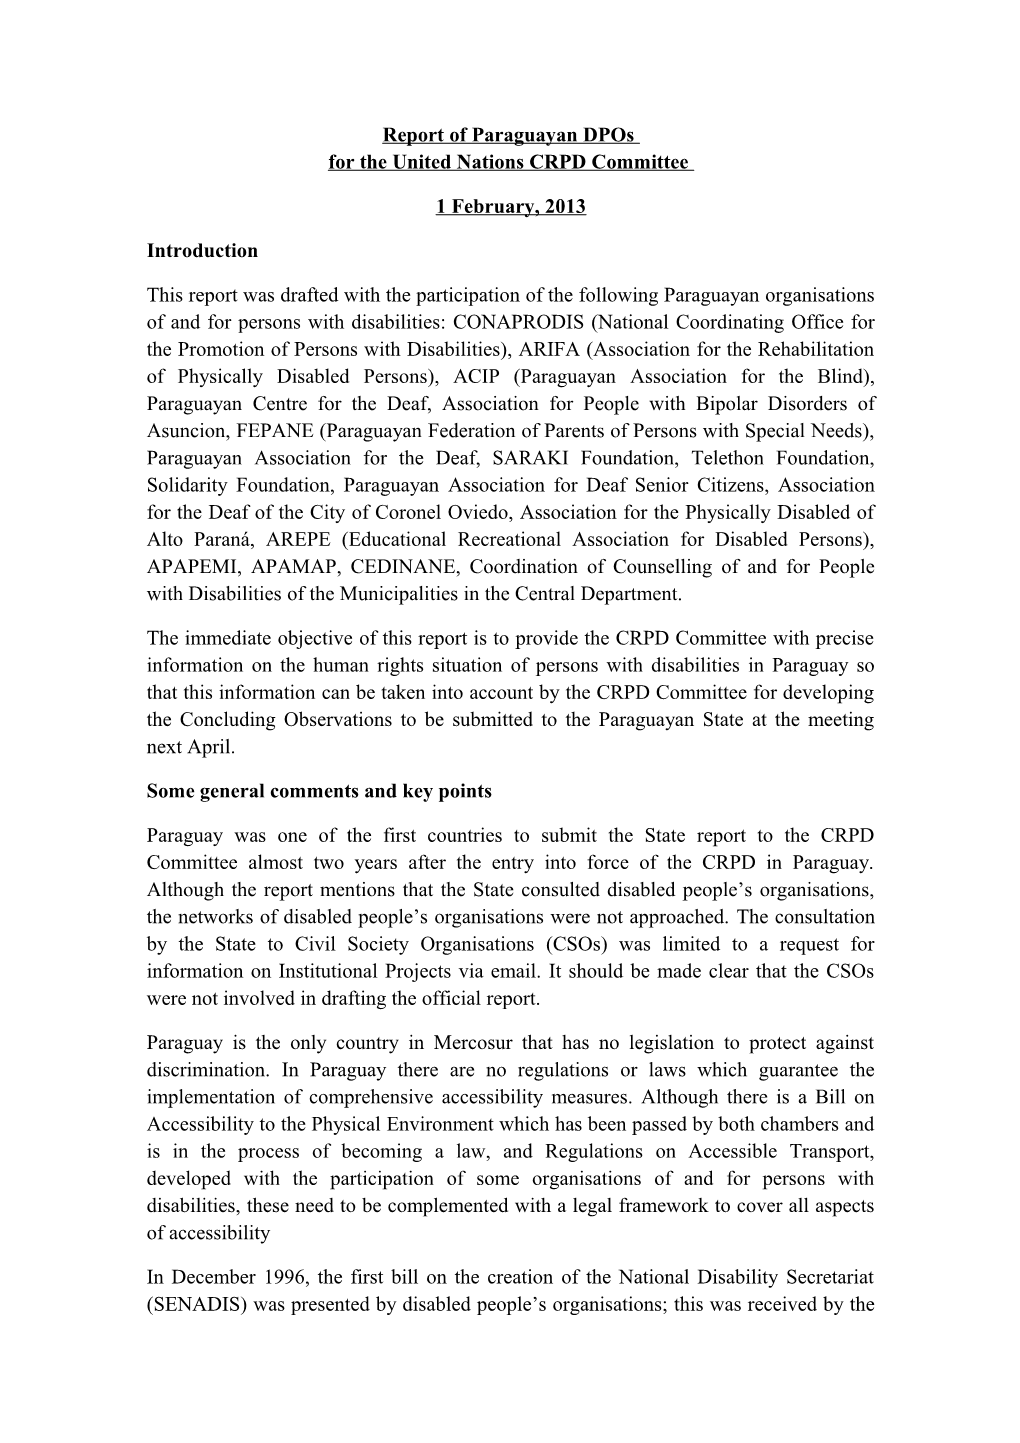 Borrador Del Informe De Opds Paraguayas Al Comité De La CDPD De Naciones Unidas 29 De Enero